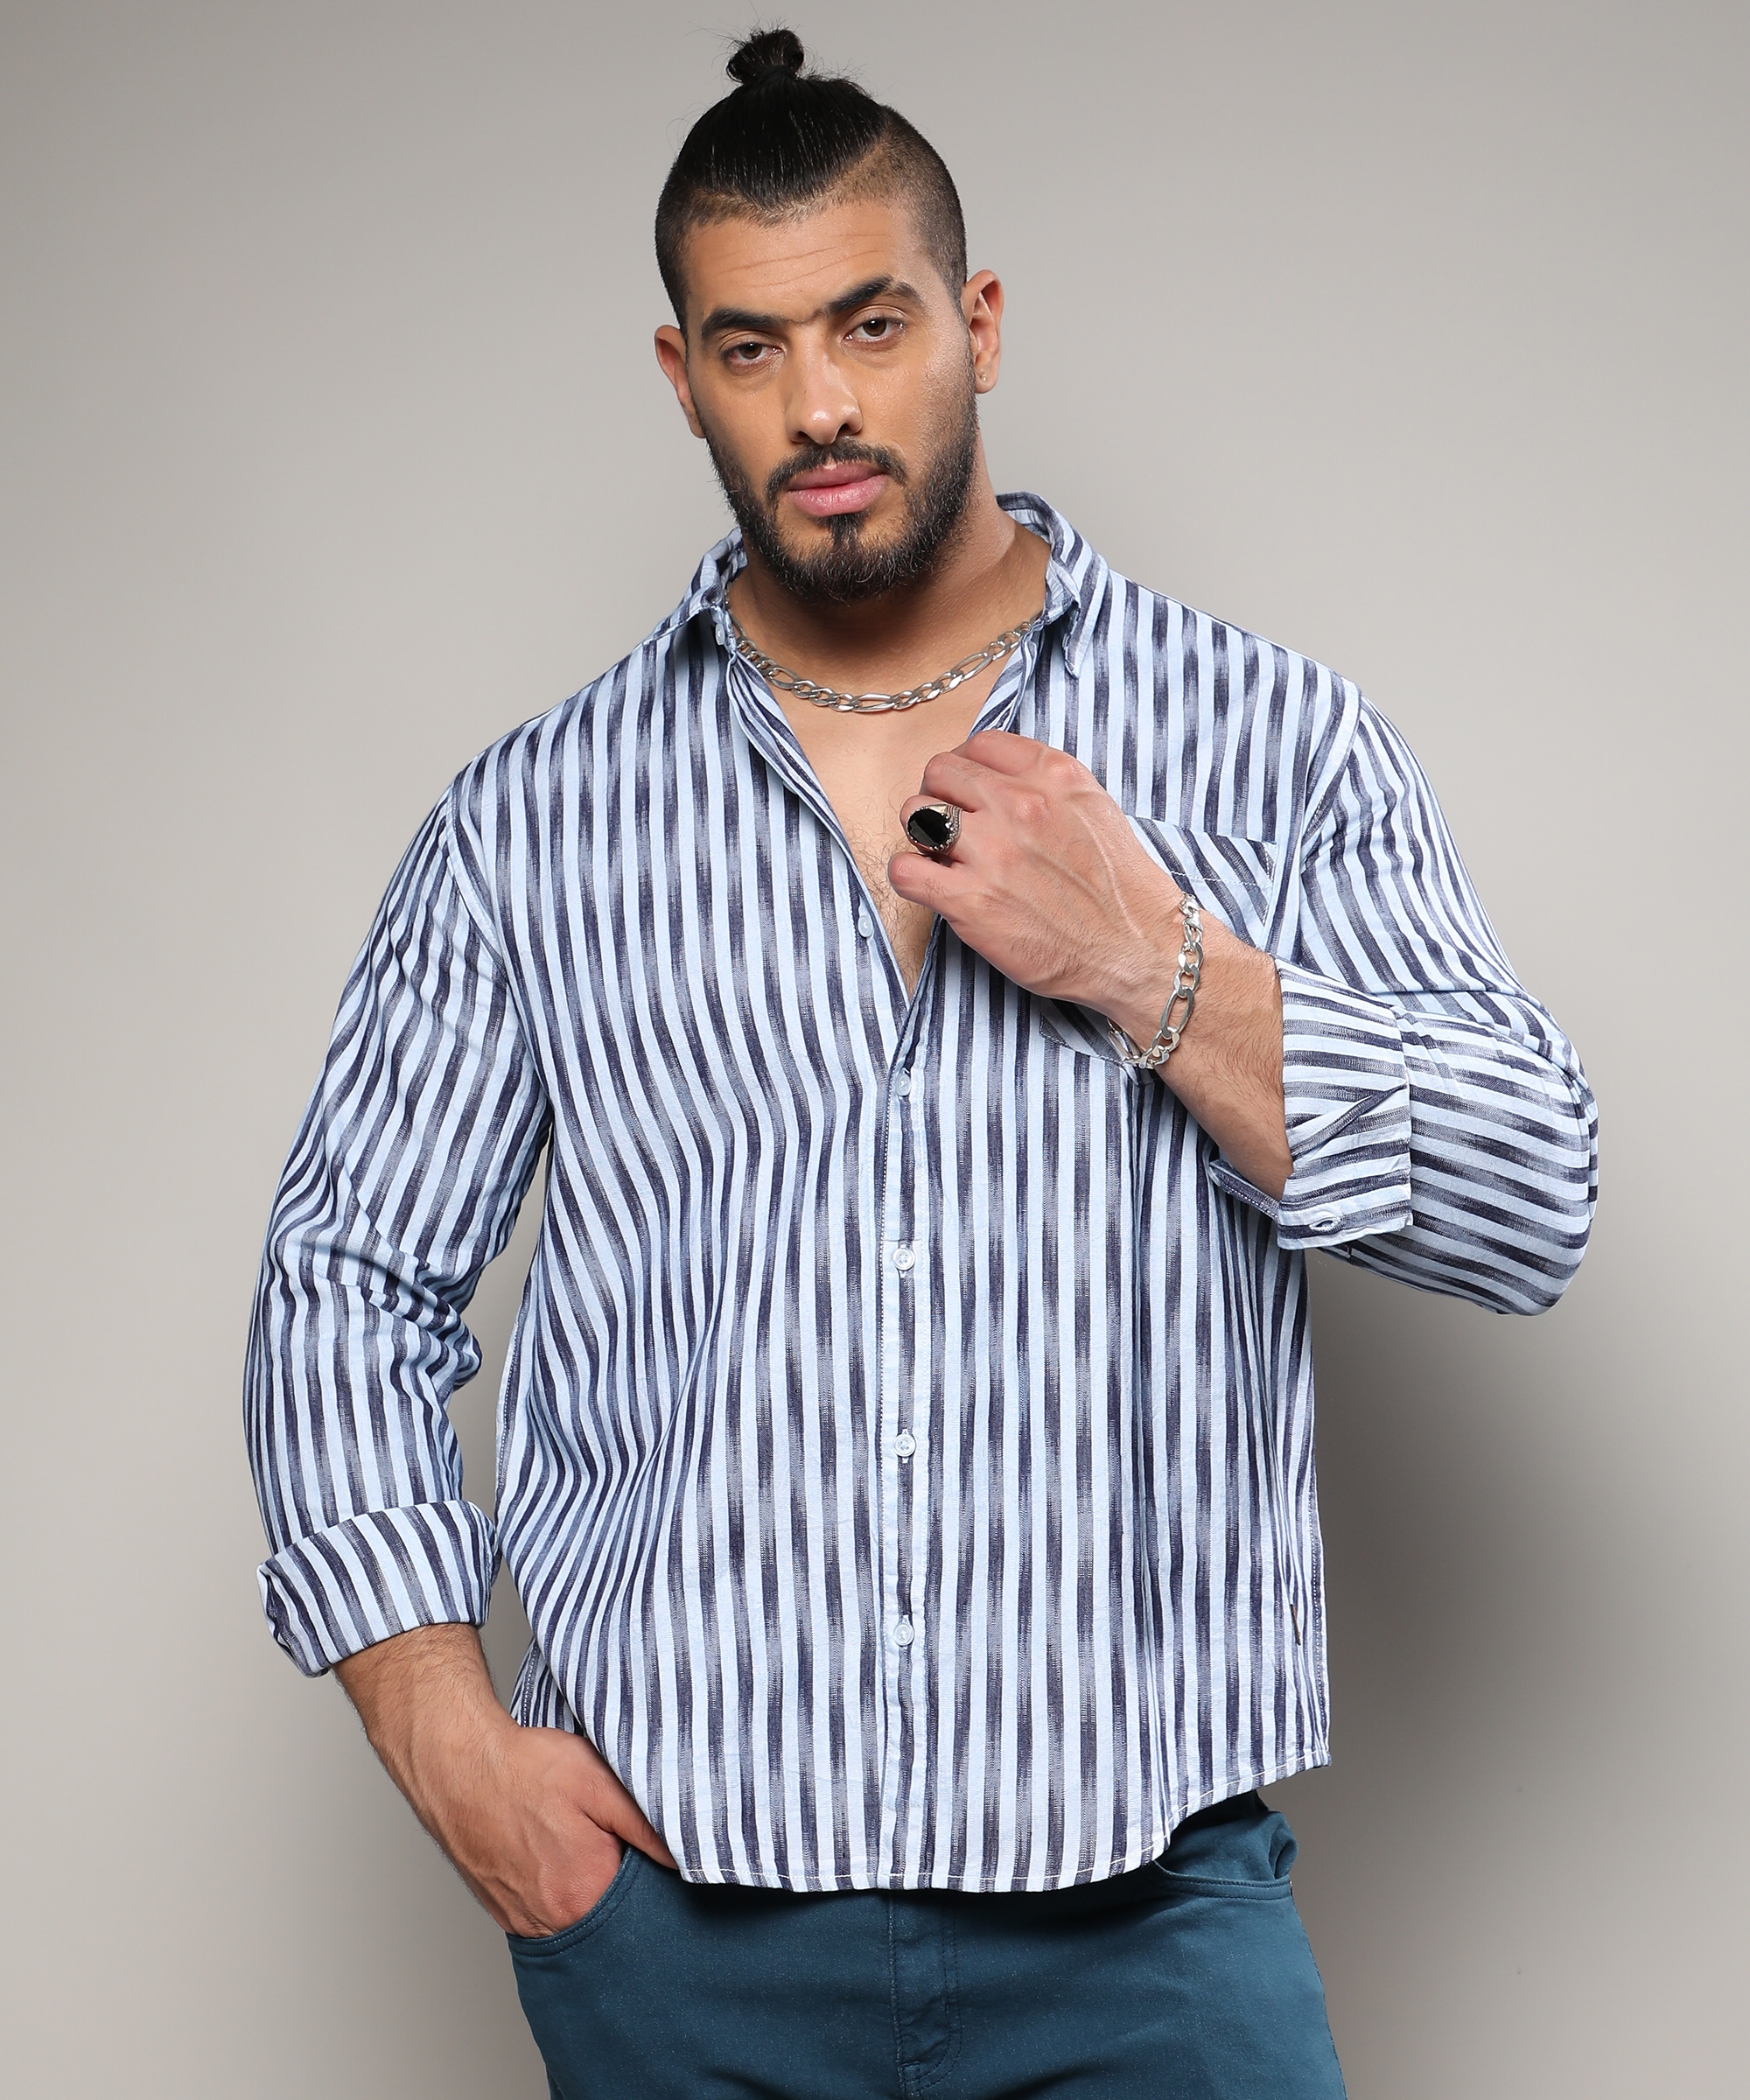 Instafab Plus | Men's Ombre Stripe Button Up Shirt